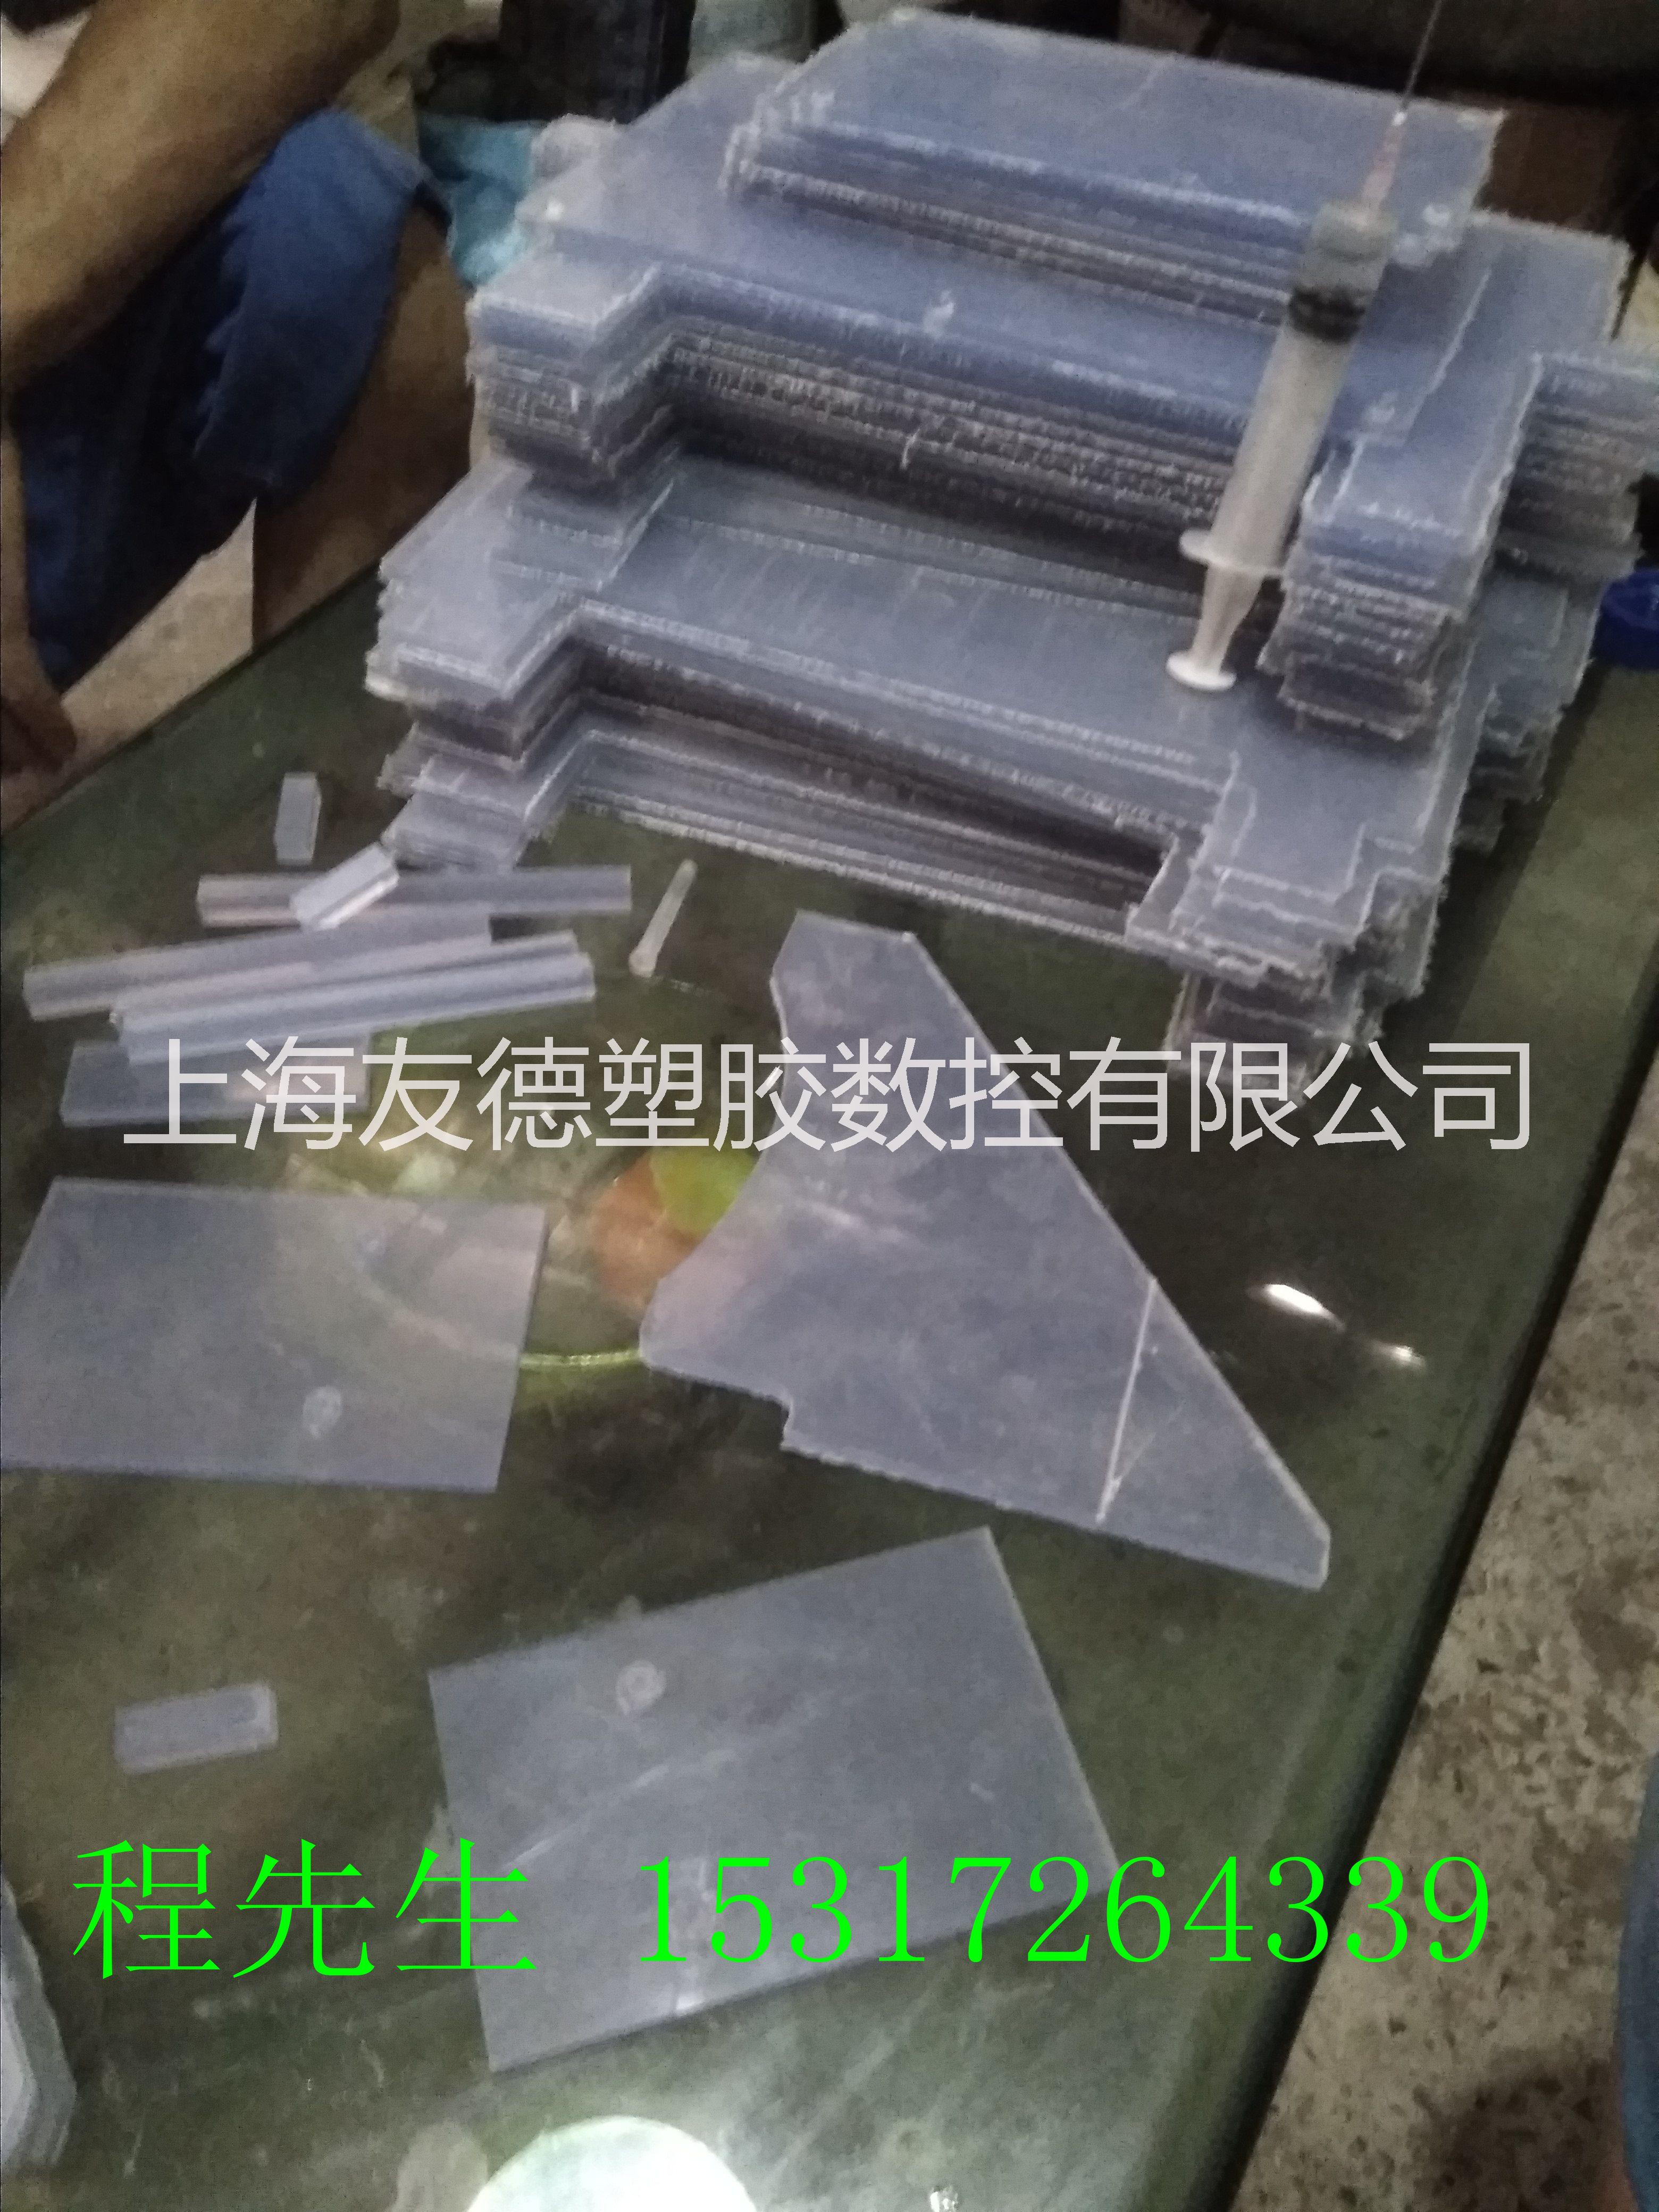 上海塑料板雕刻加工|上海塑料板切割加工|上海塑料板加工厂